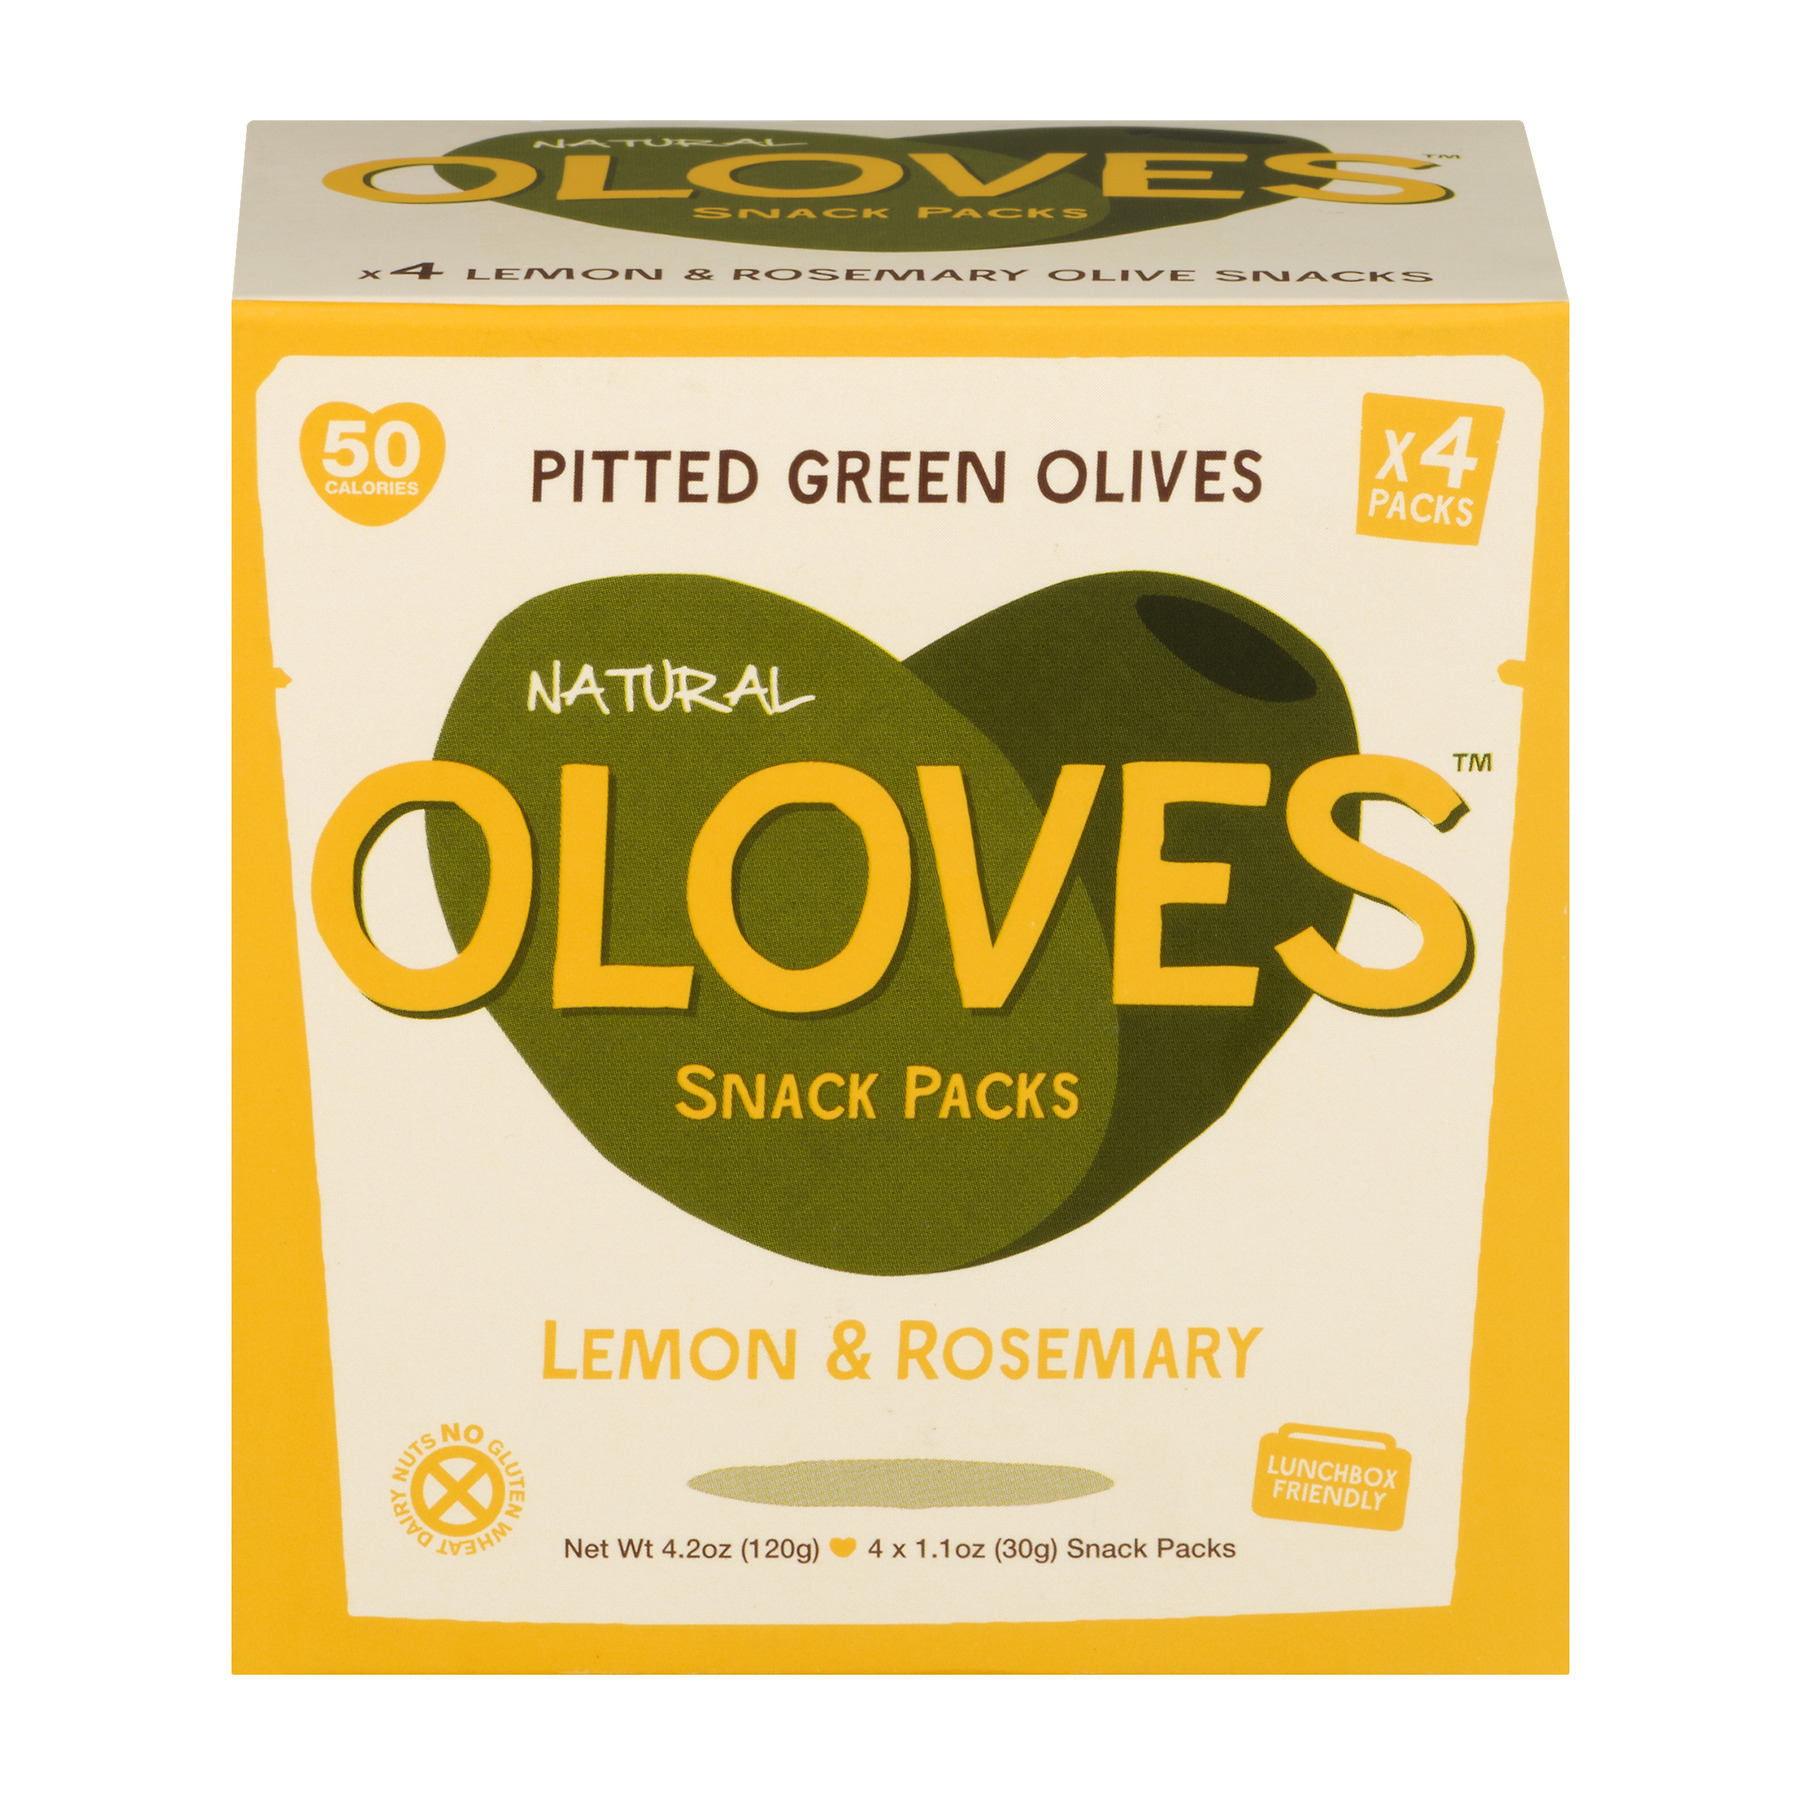 Oloves Pitted Green Olives Snack Packs Lemon & Rosemary - 4 CT1.1 OZ - image 1 of 6